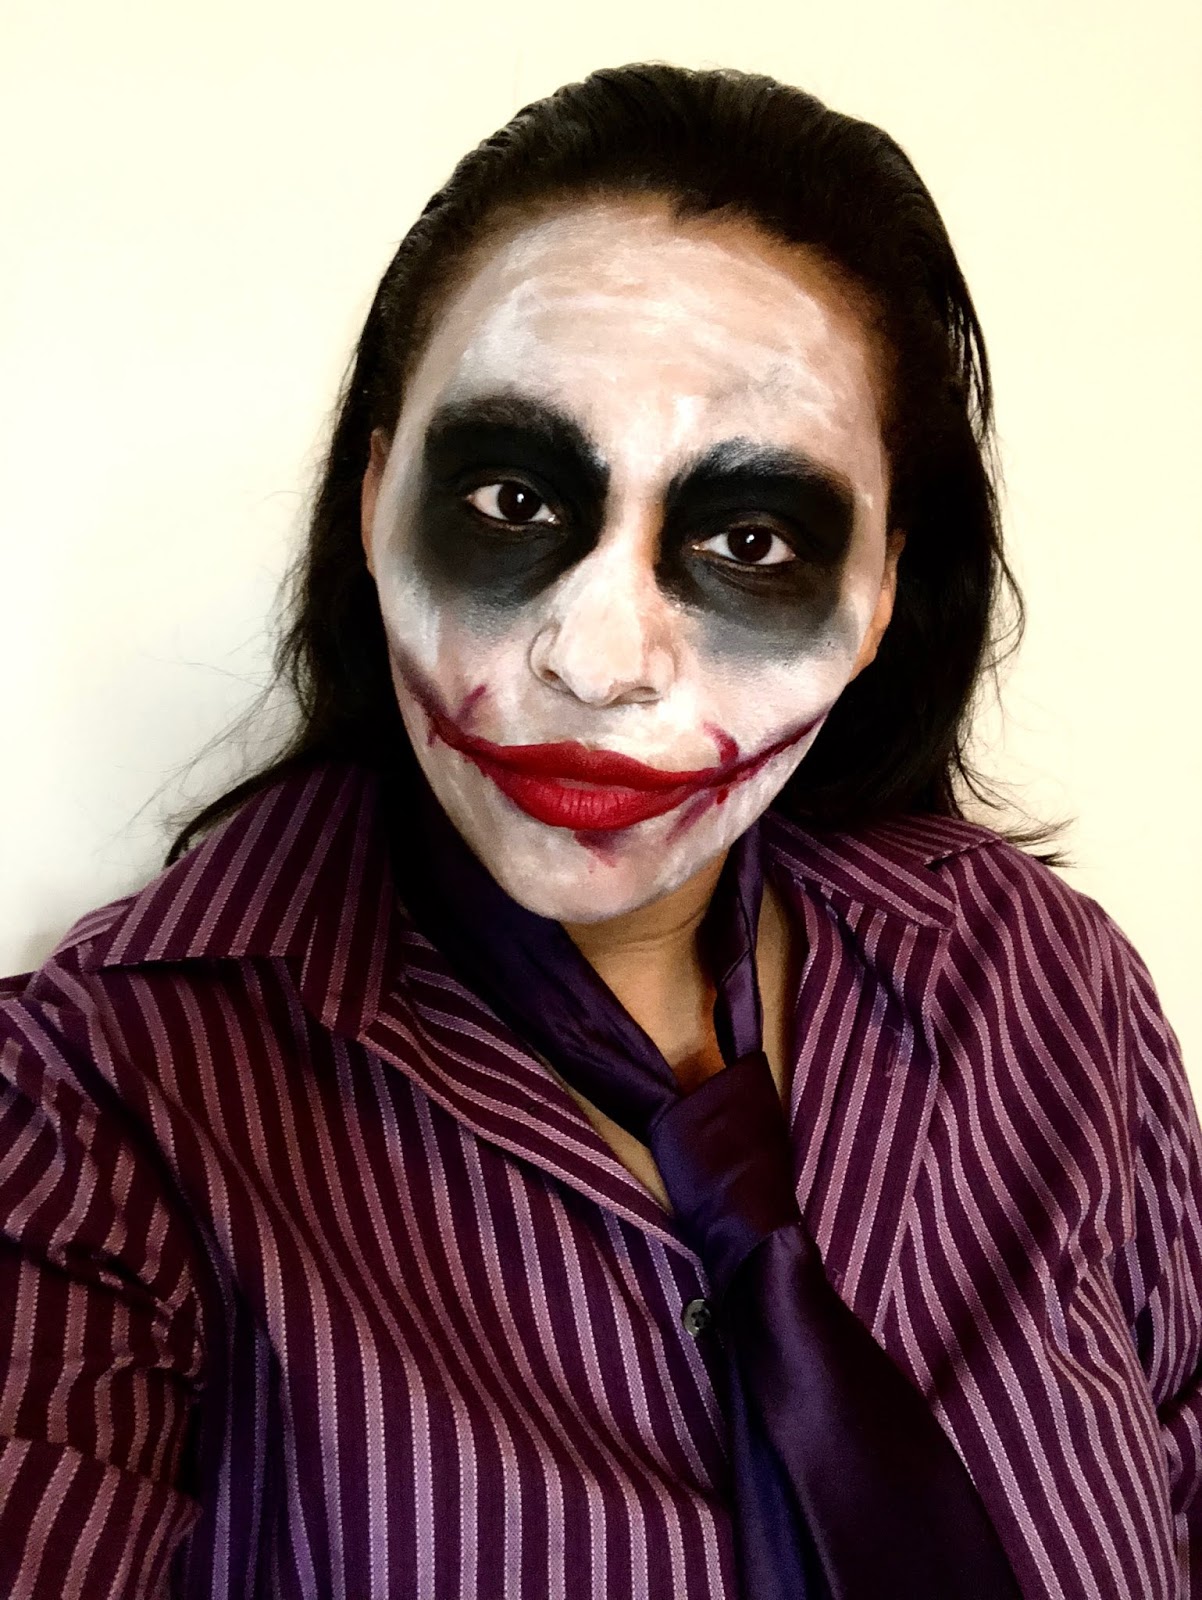 Joker makeup, halloween makeup, batman and the joker, halloween, costume ideas